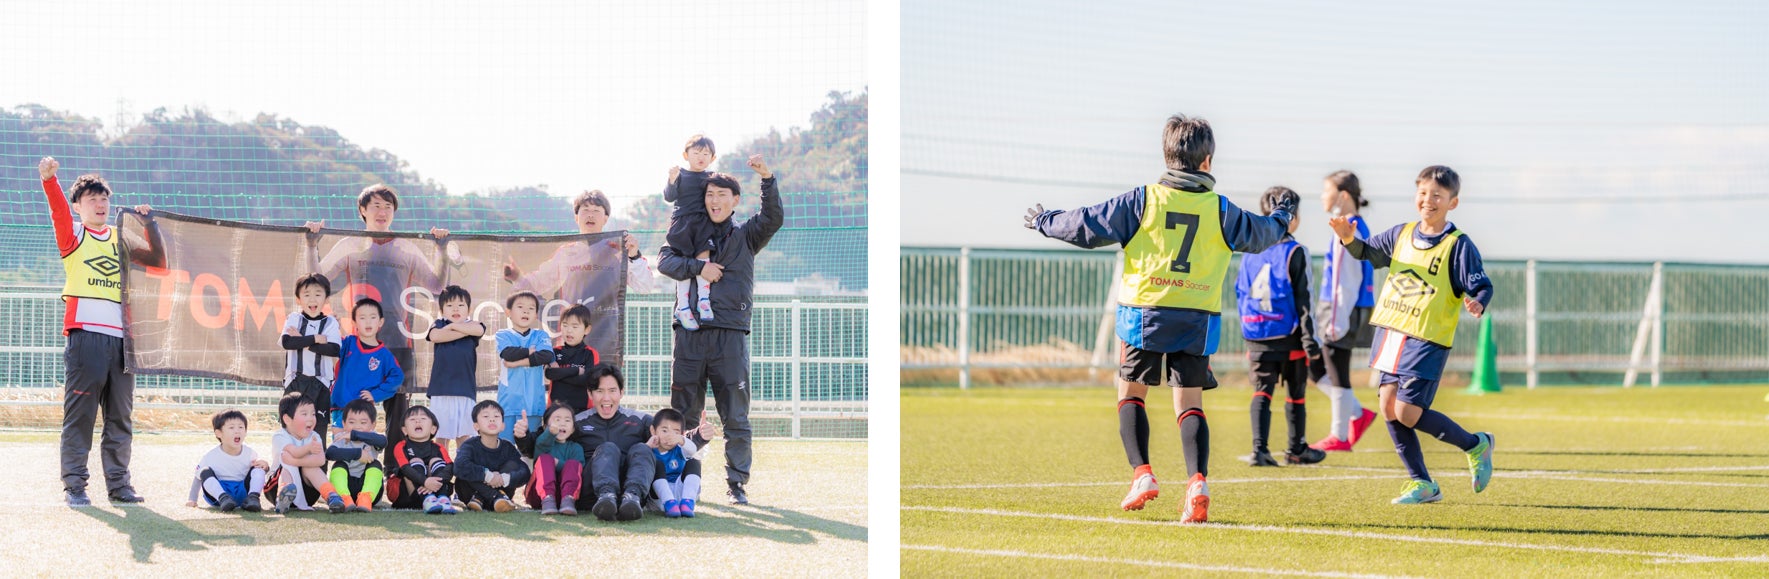 【3月28日・30日出発】「TOMASサッカースクール」が春休みのサッカーキャンプを開催